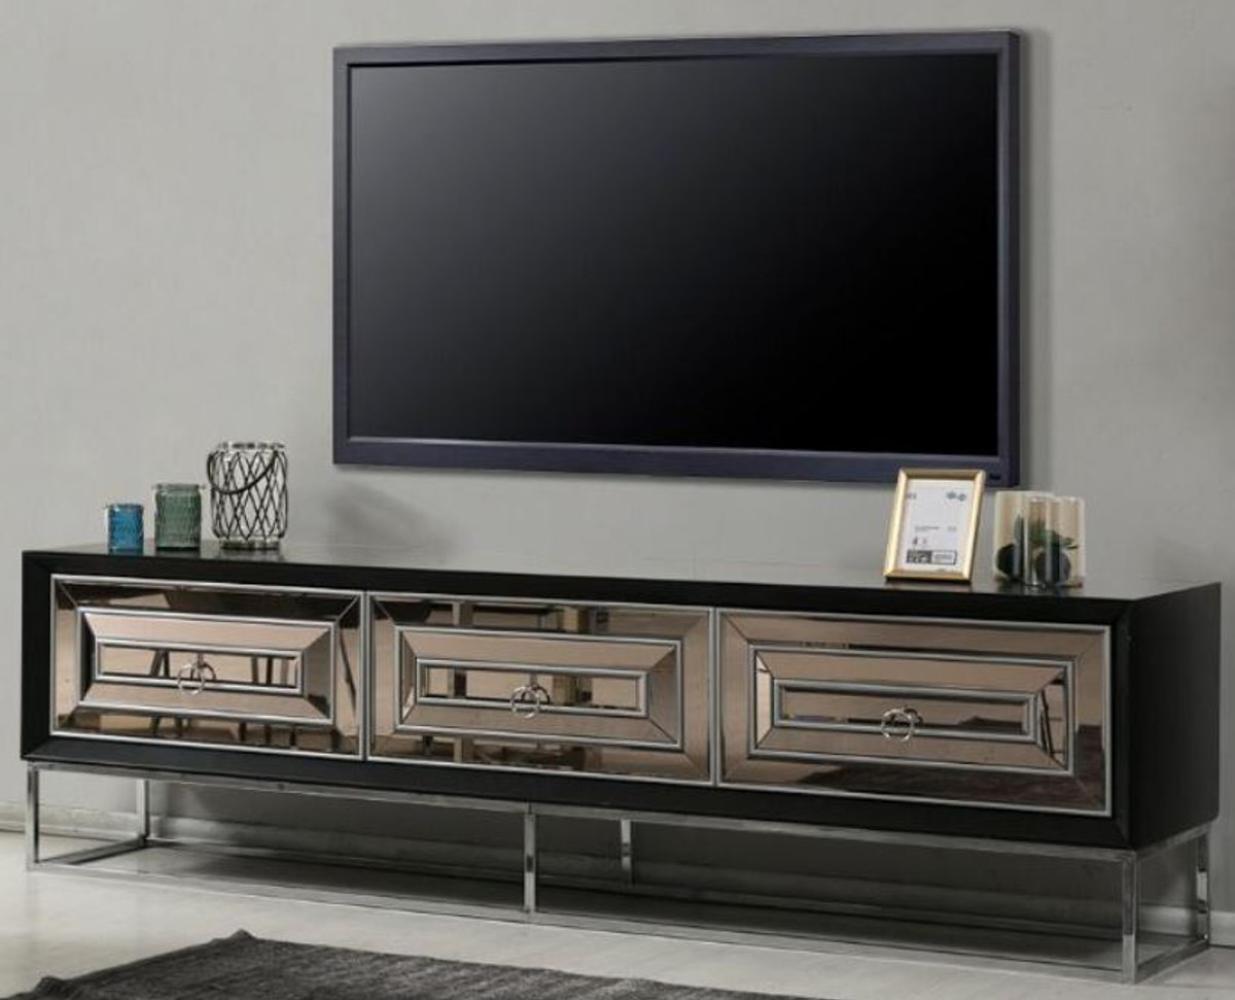 Casa Padrino Luxus TV Schrank mit 3 verspiegelten Schubladen Schwarz / Silber 220 x 49 x H. 64 cm - Wohnzimmer Möbel - Luxus Qualität Bild 1